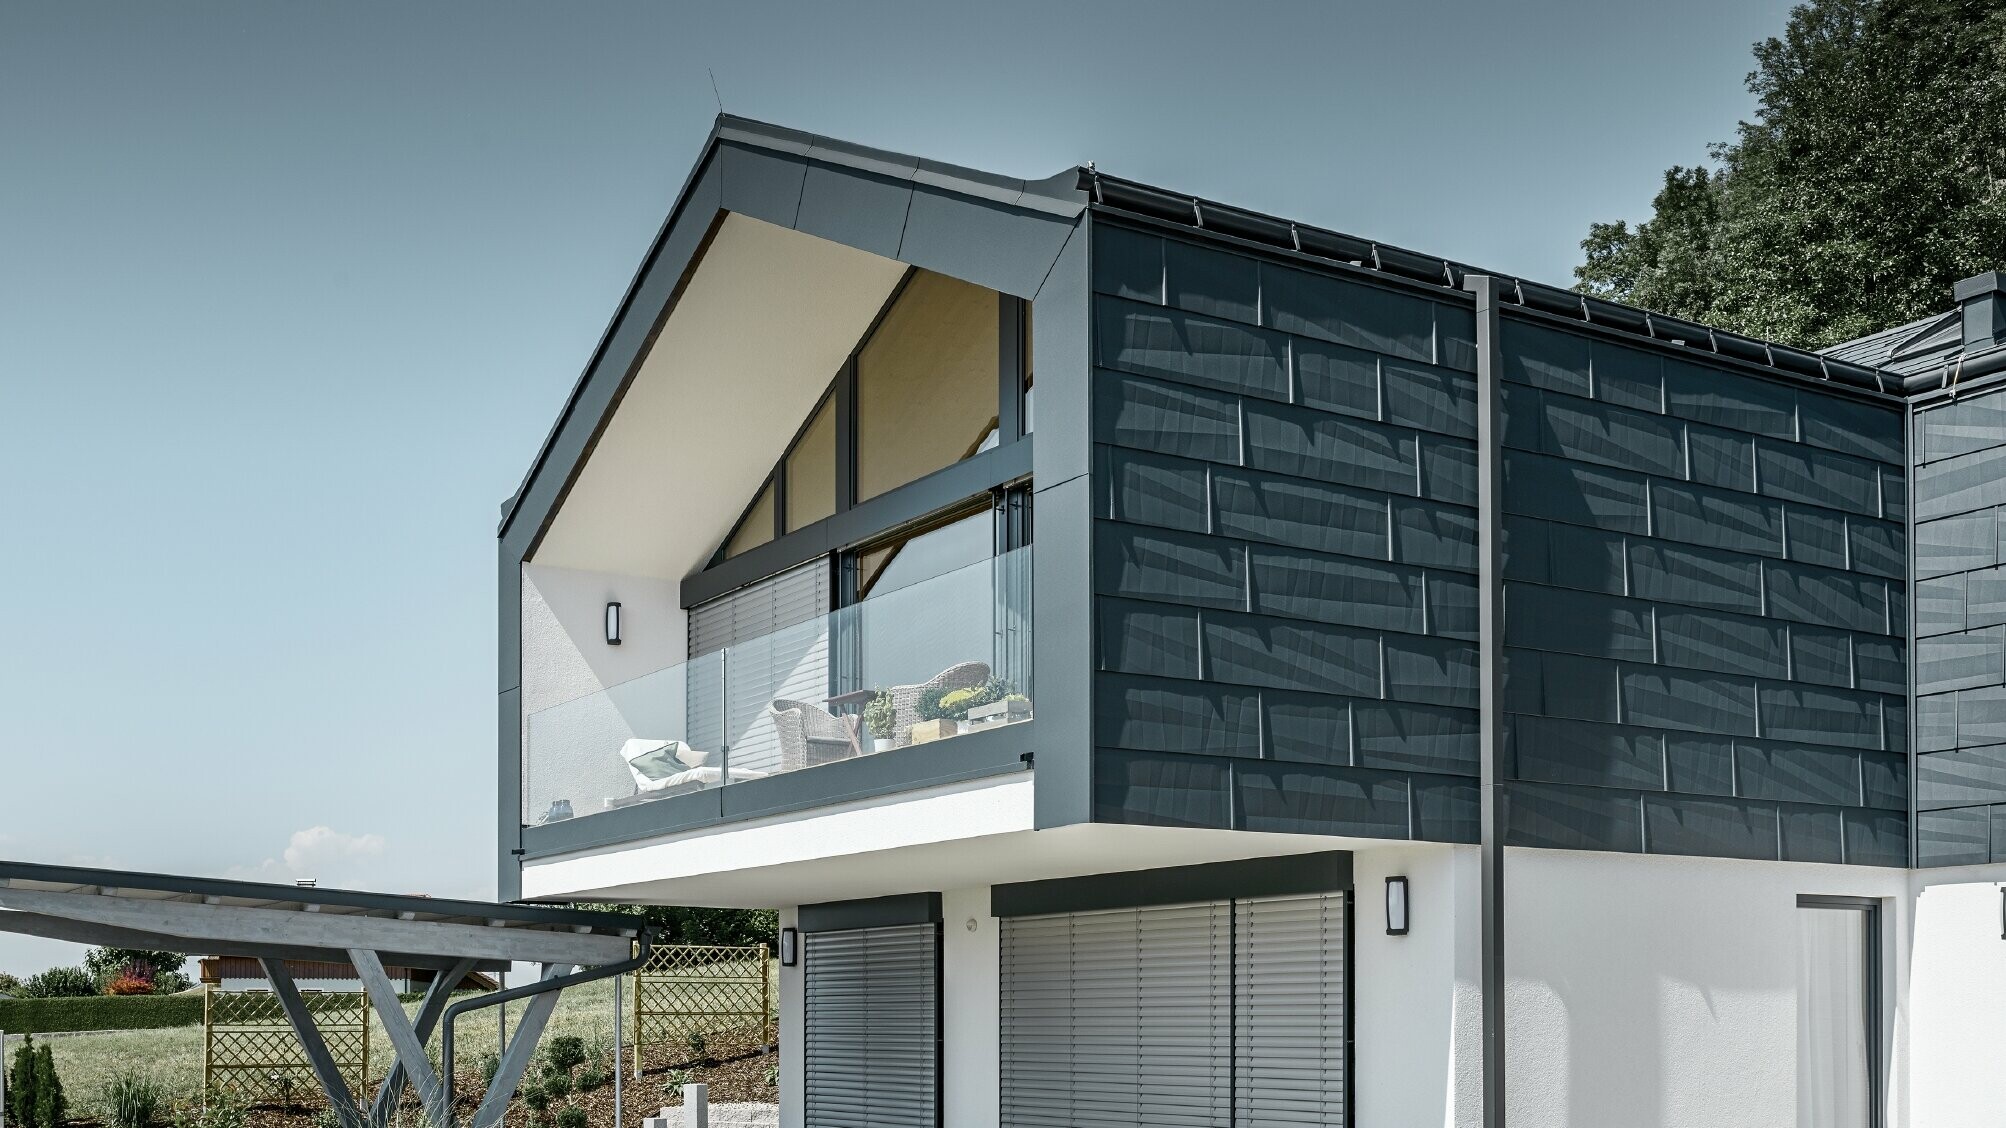 Sodobna večdružinska hiša z velikimi okni, streha in fasada sta oblečeni s strešnimi in fasadnimi paneli FX.12 antracitne barve